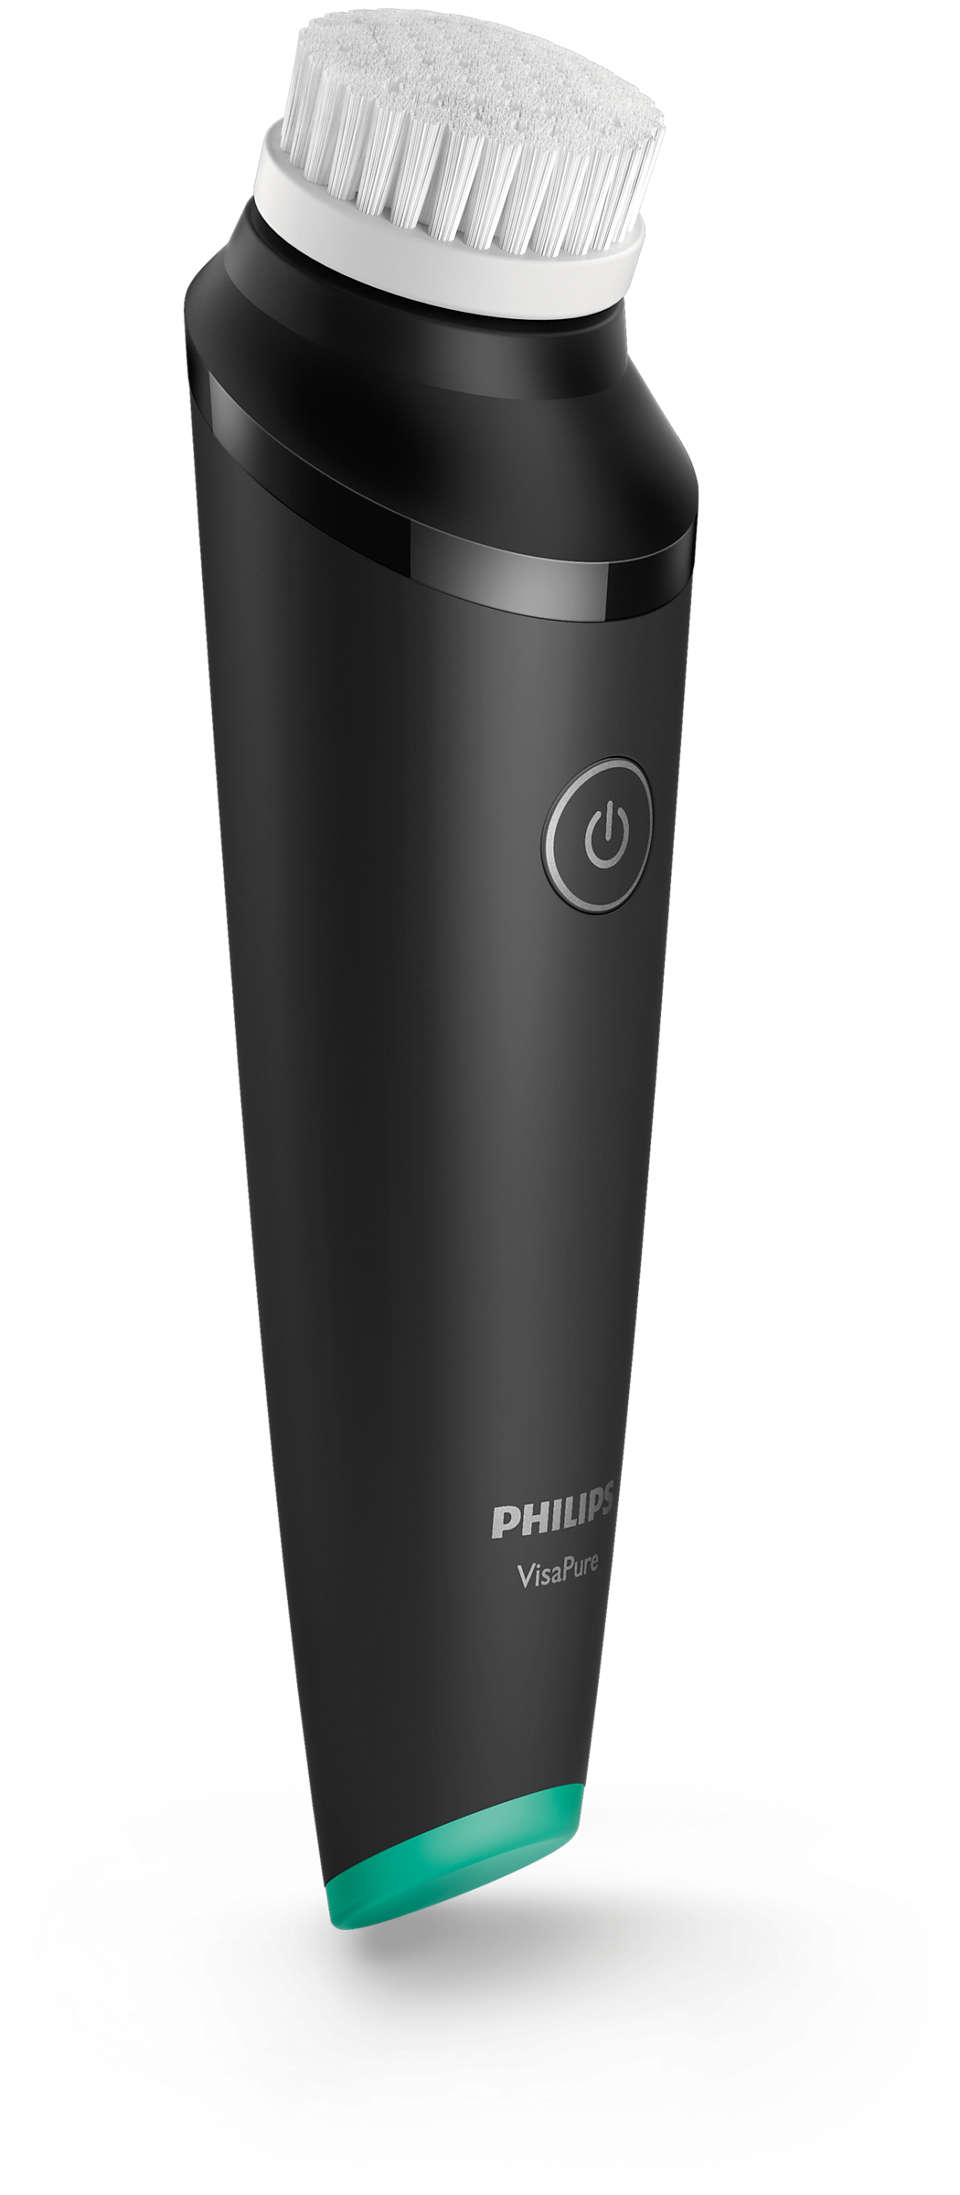 Philips visapure essential - Die besten Philips visapure essential auf einen Blick